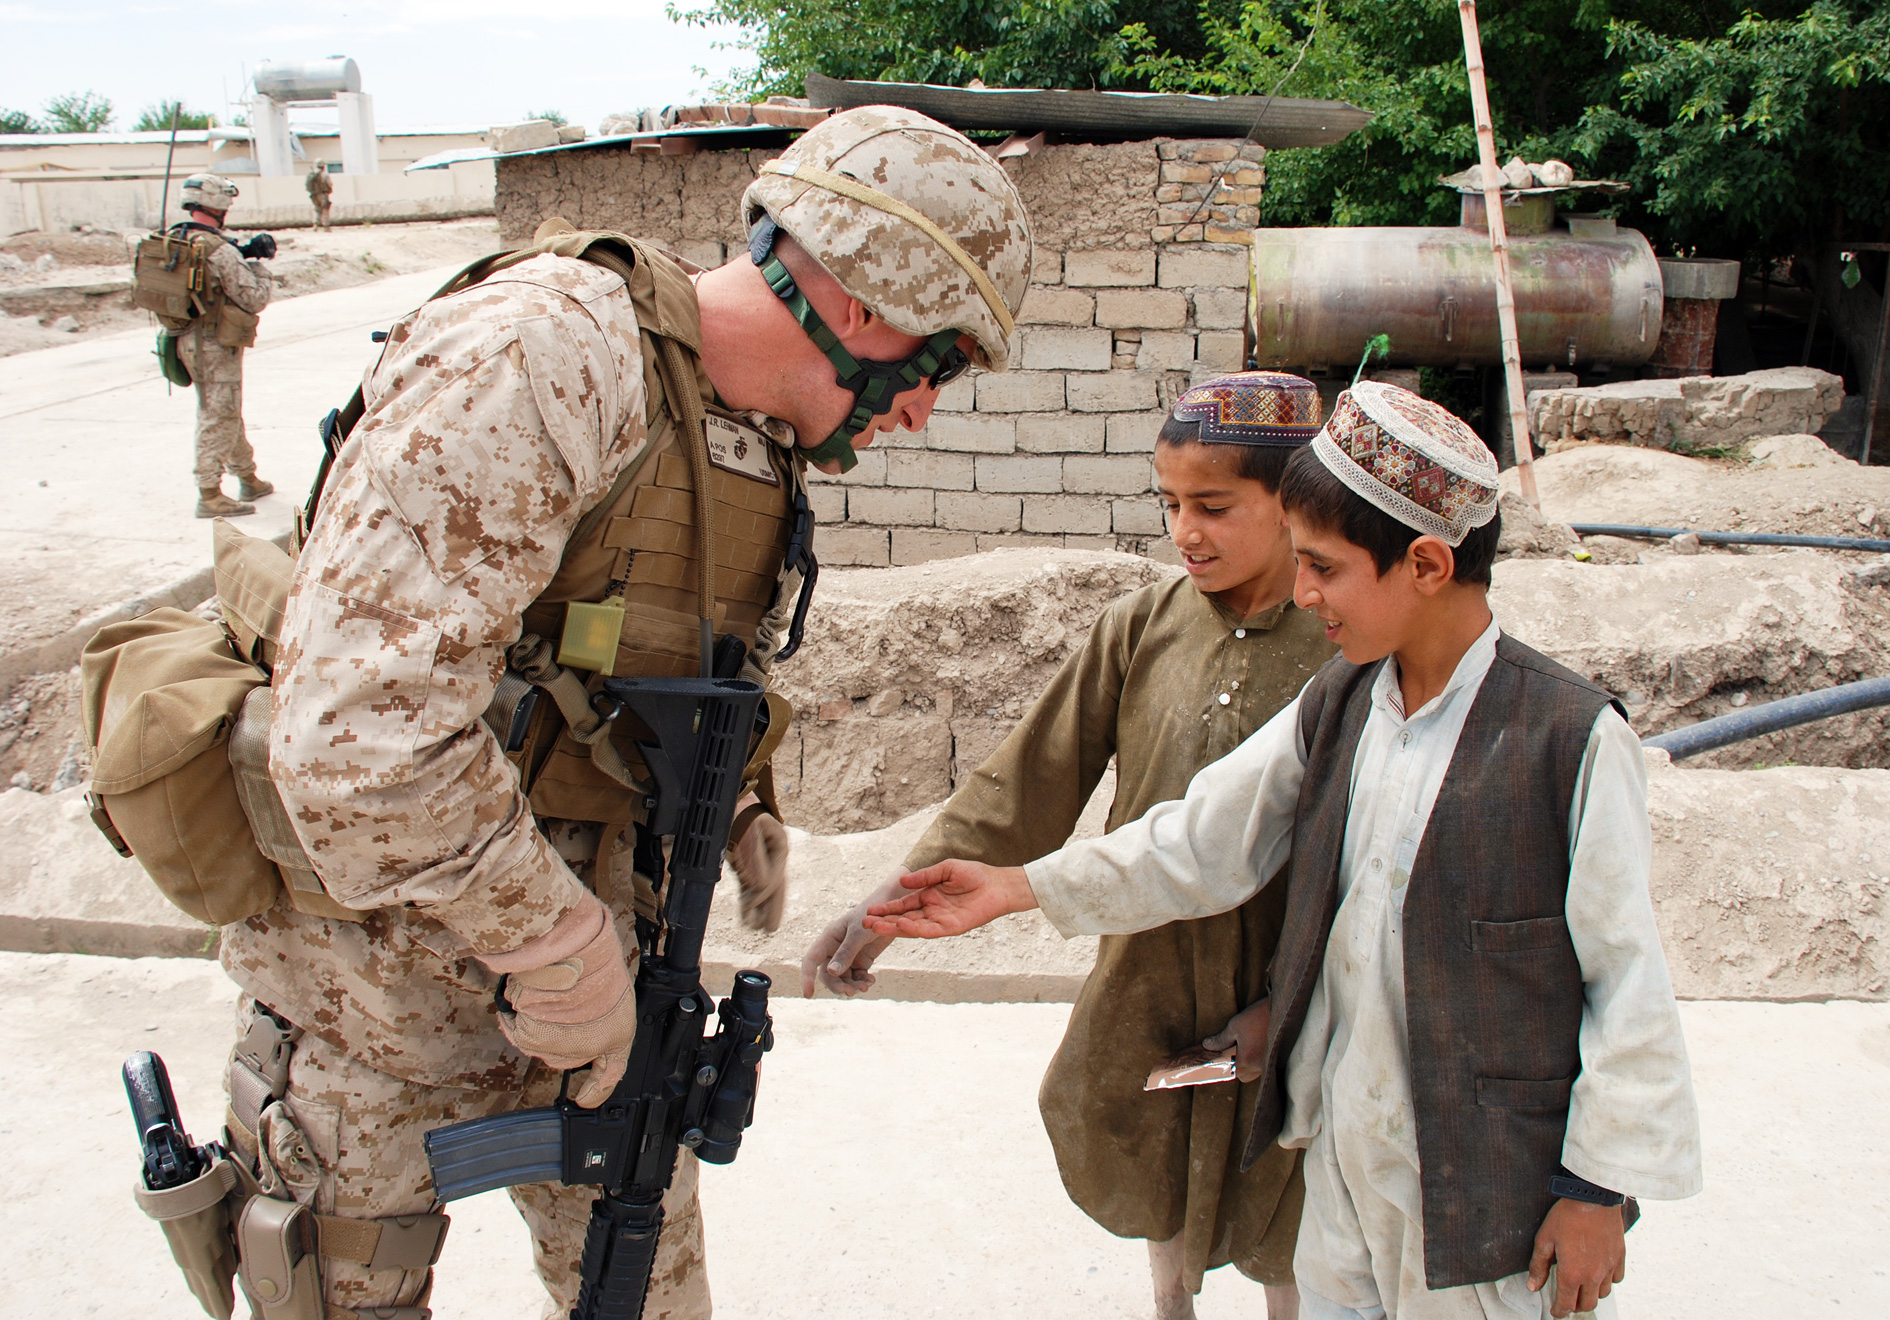 Marine John Lehman in Afghanistan